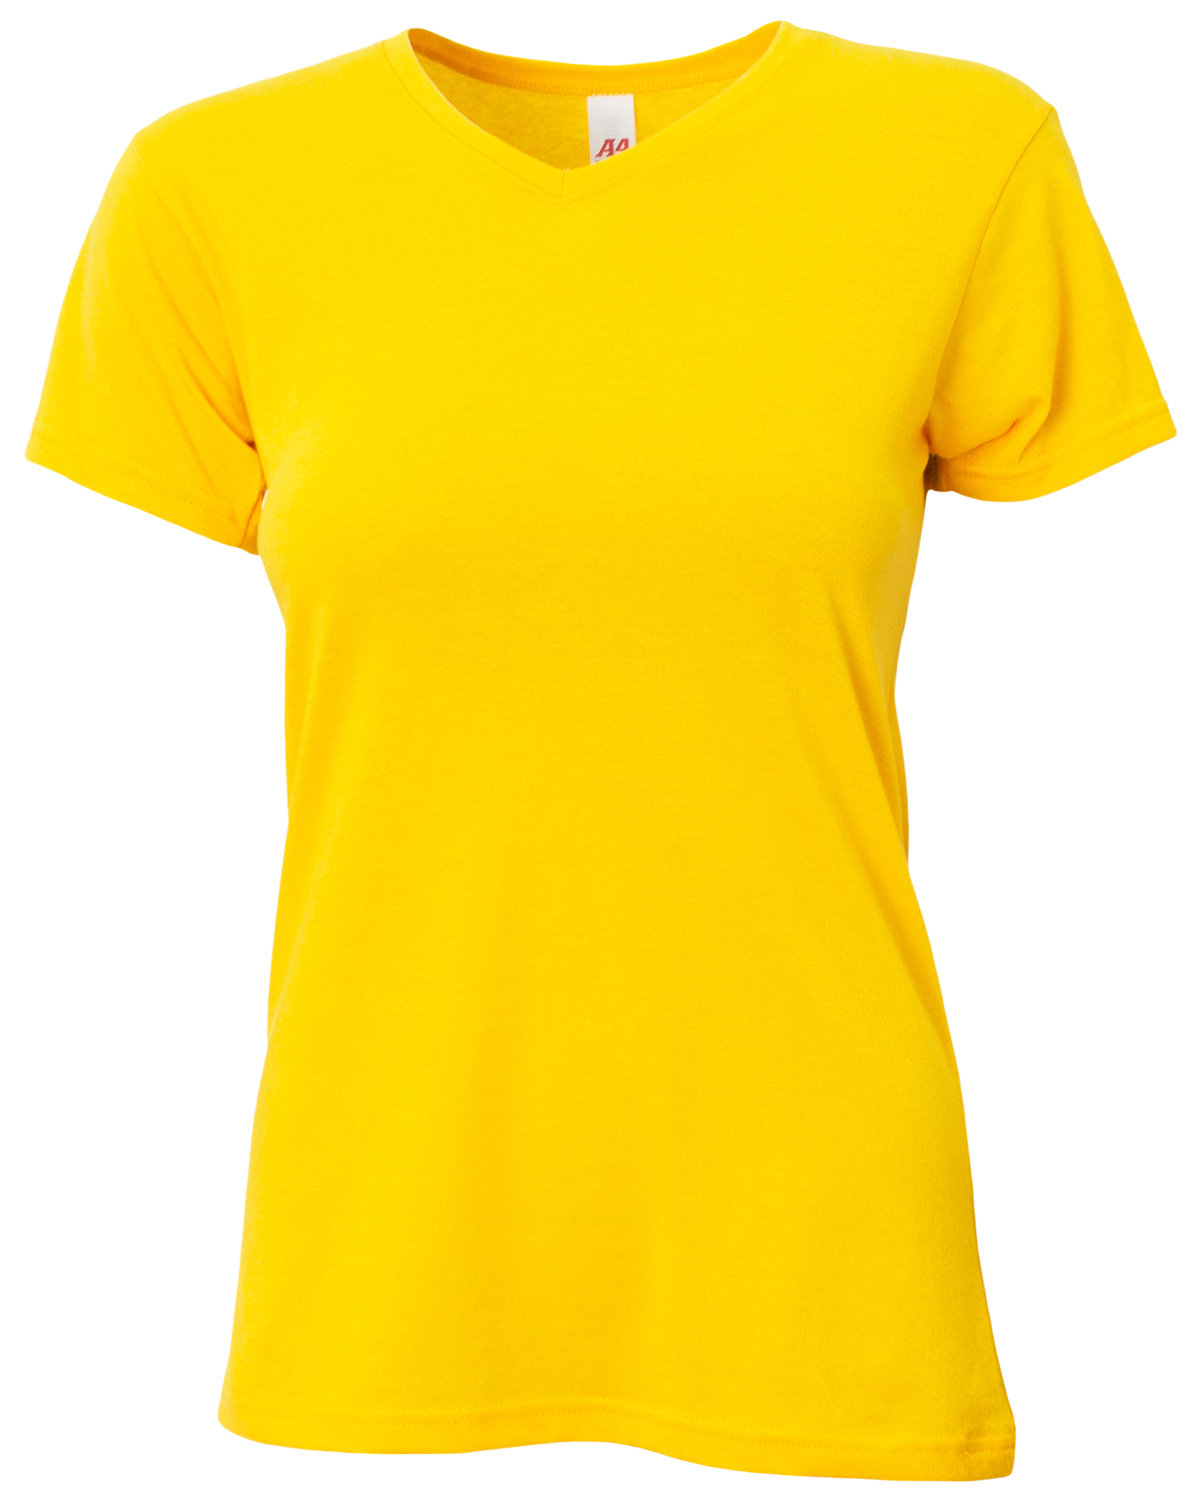 A4 Ladies' Softek V-Neck T-Shirt | alphabroder